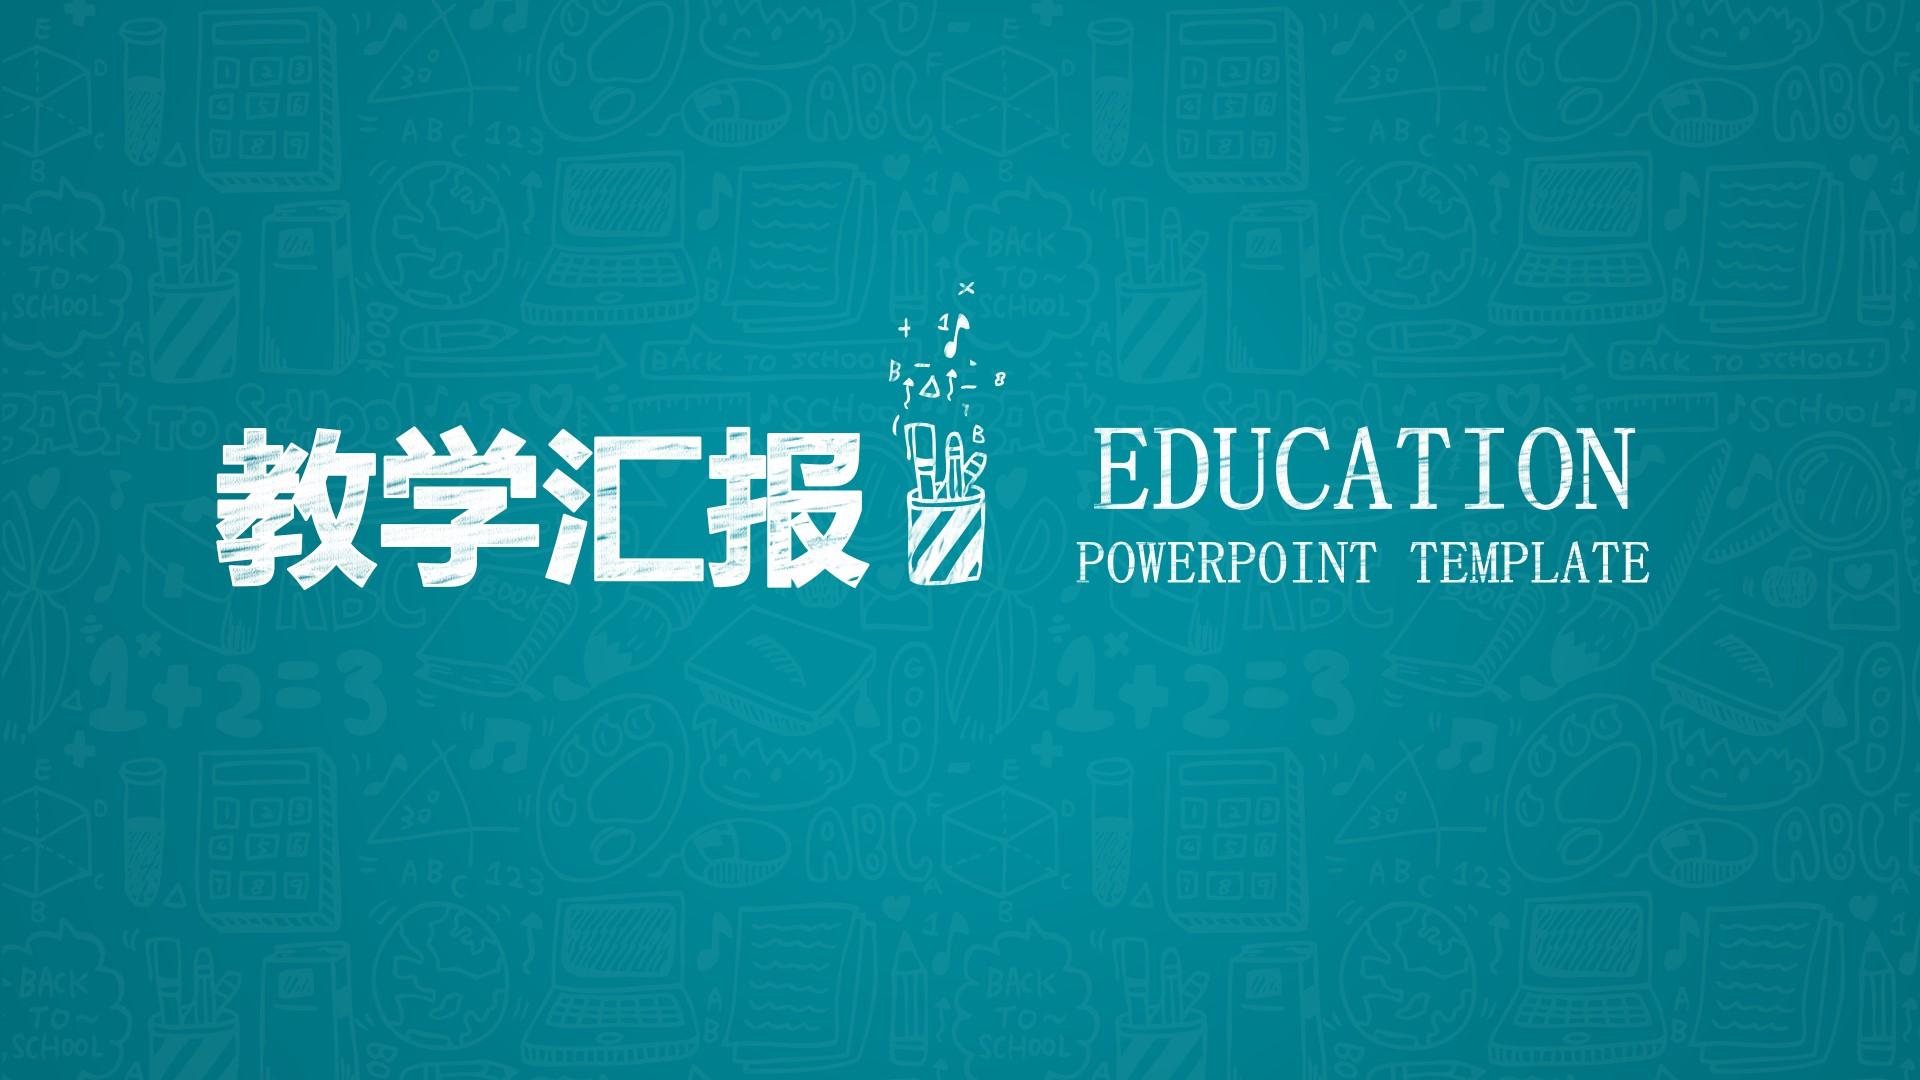 教育教学青色白色简洁标准education powerpoint template 云素材PPT模板1672684704092